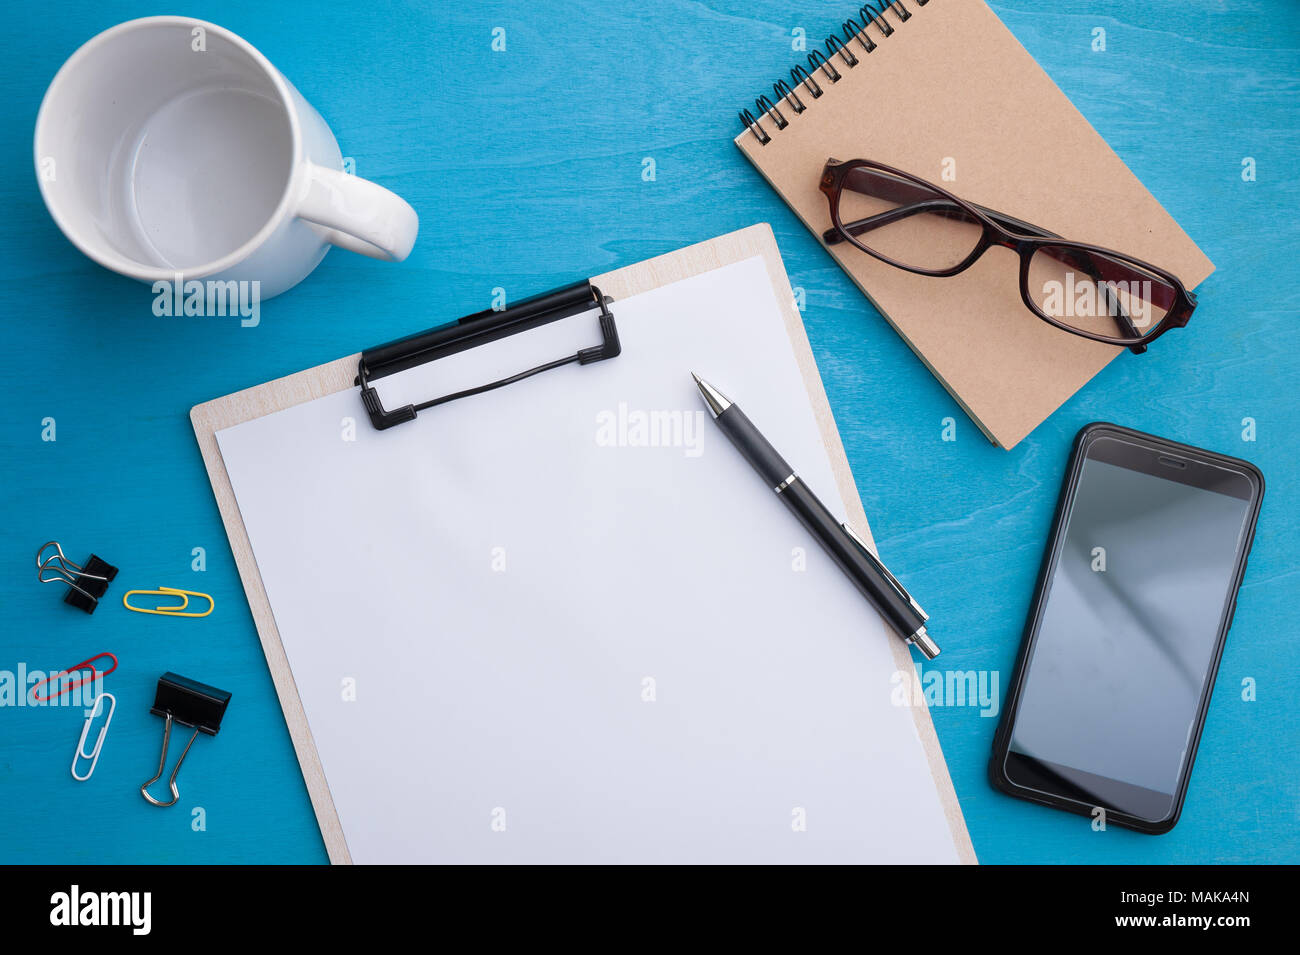 Dimensioni A4 appunti, smartphone piccolo notebook e la tazza di caffè blu sulla tavola di legno nel luogo di lavoro. lo sfondo con la zona vuota per il testo o messaggio. Foto Stock